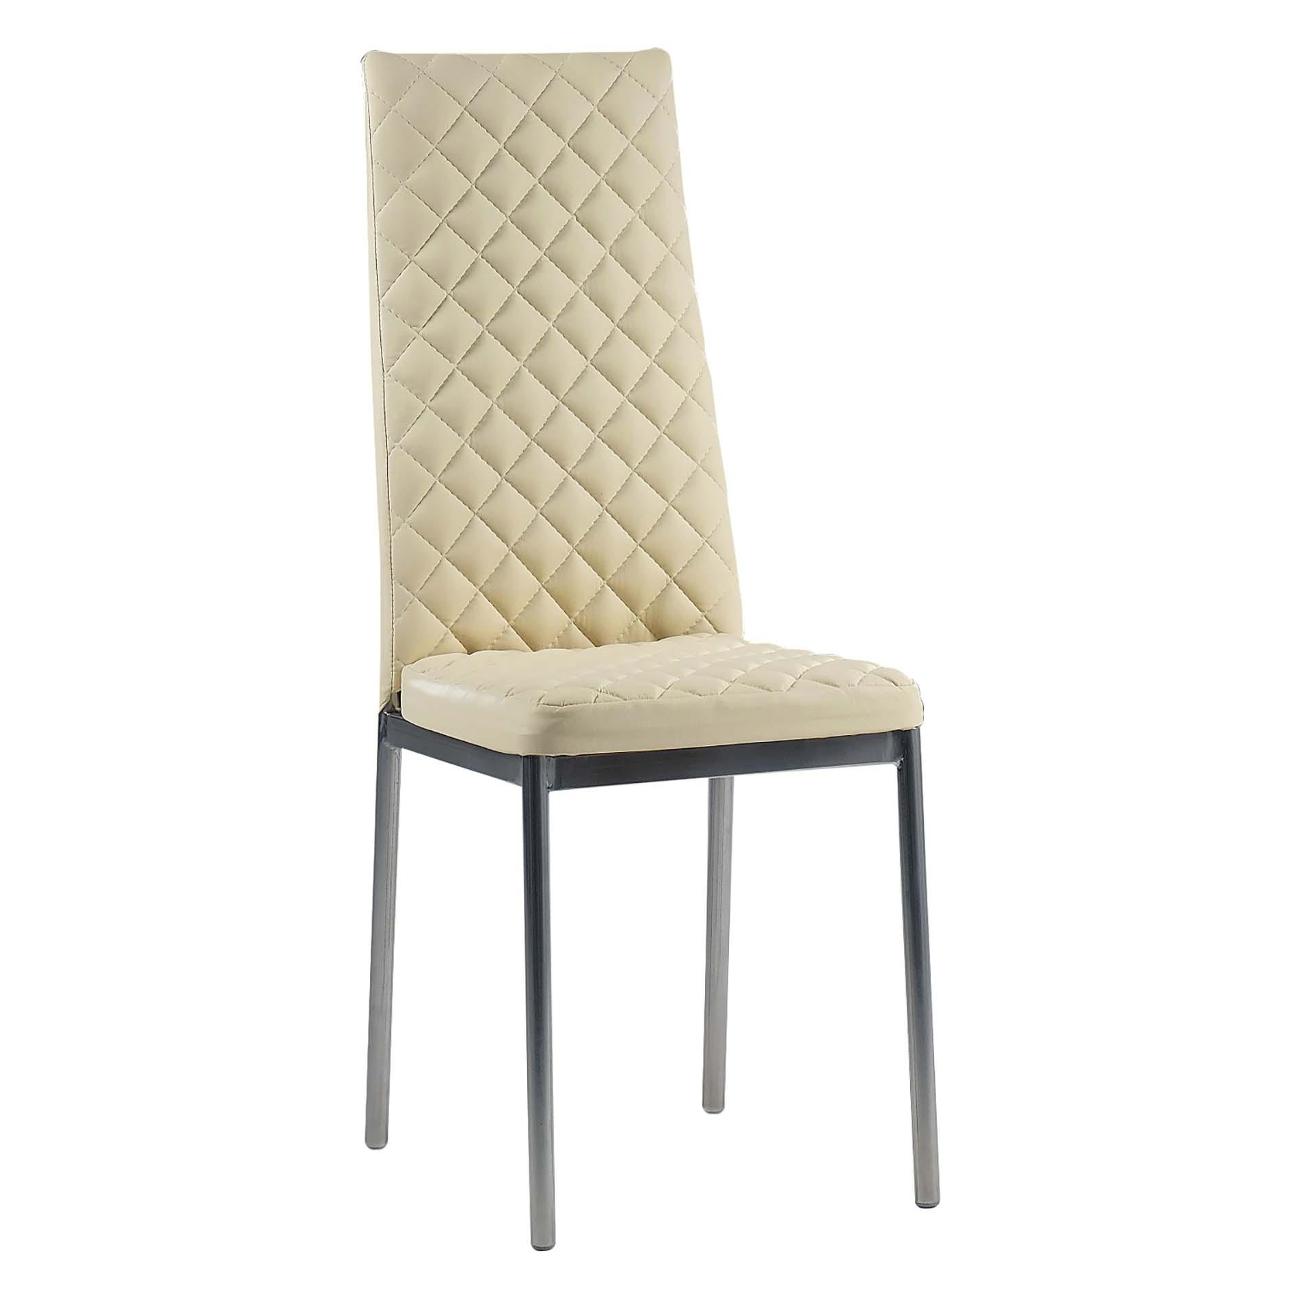 стул s образный мягкий 430х550х840 сиденье и спинка кожзам